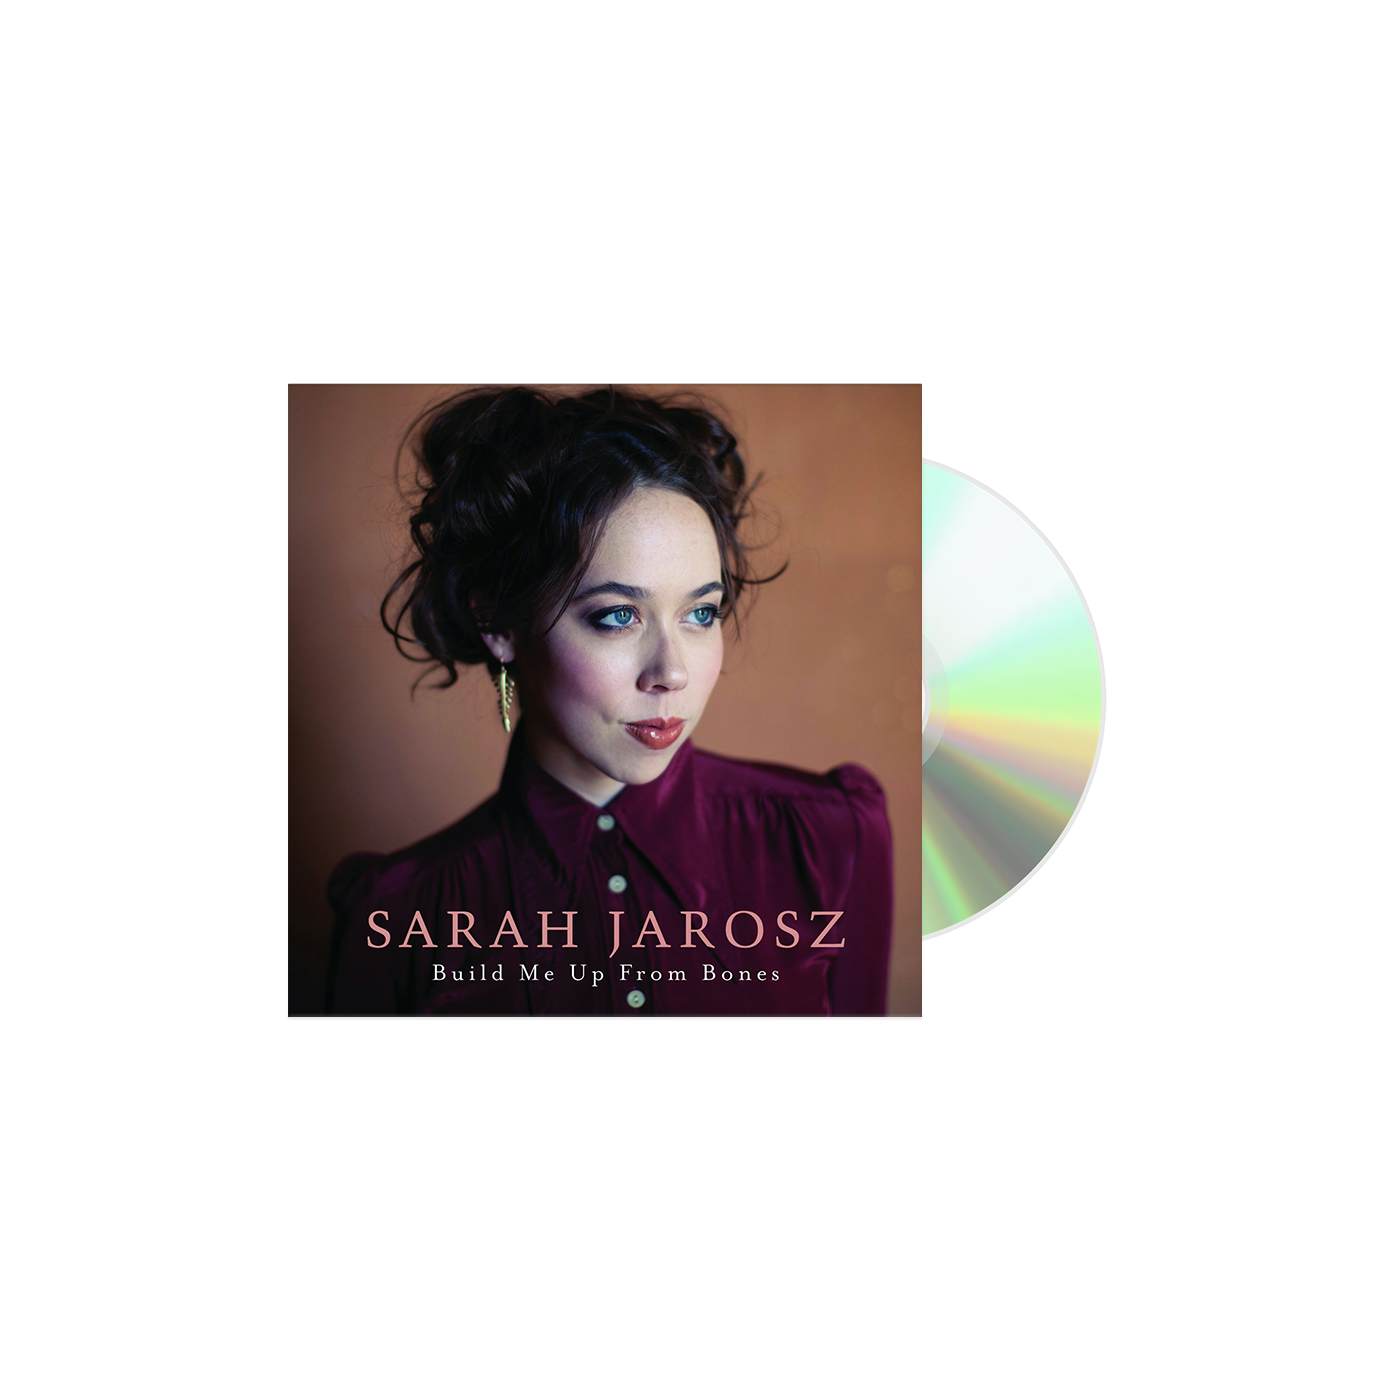 Sarah Jarosz Build Me Up From Bones CD